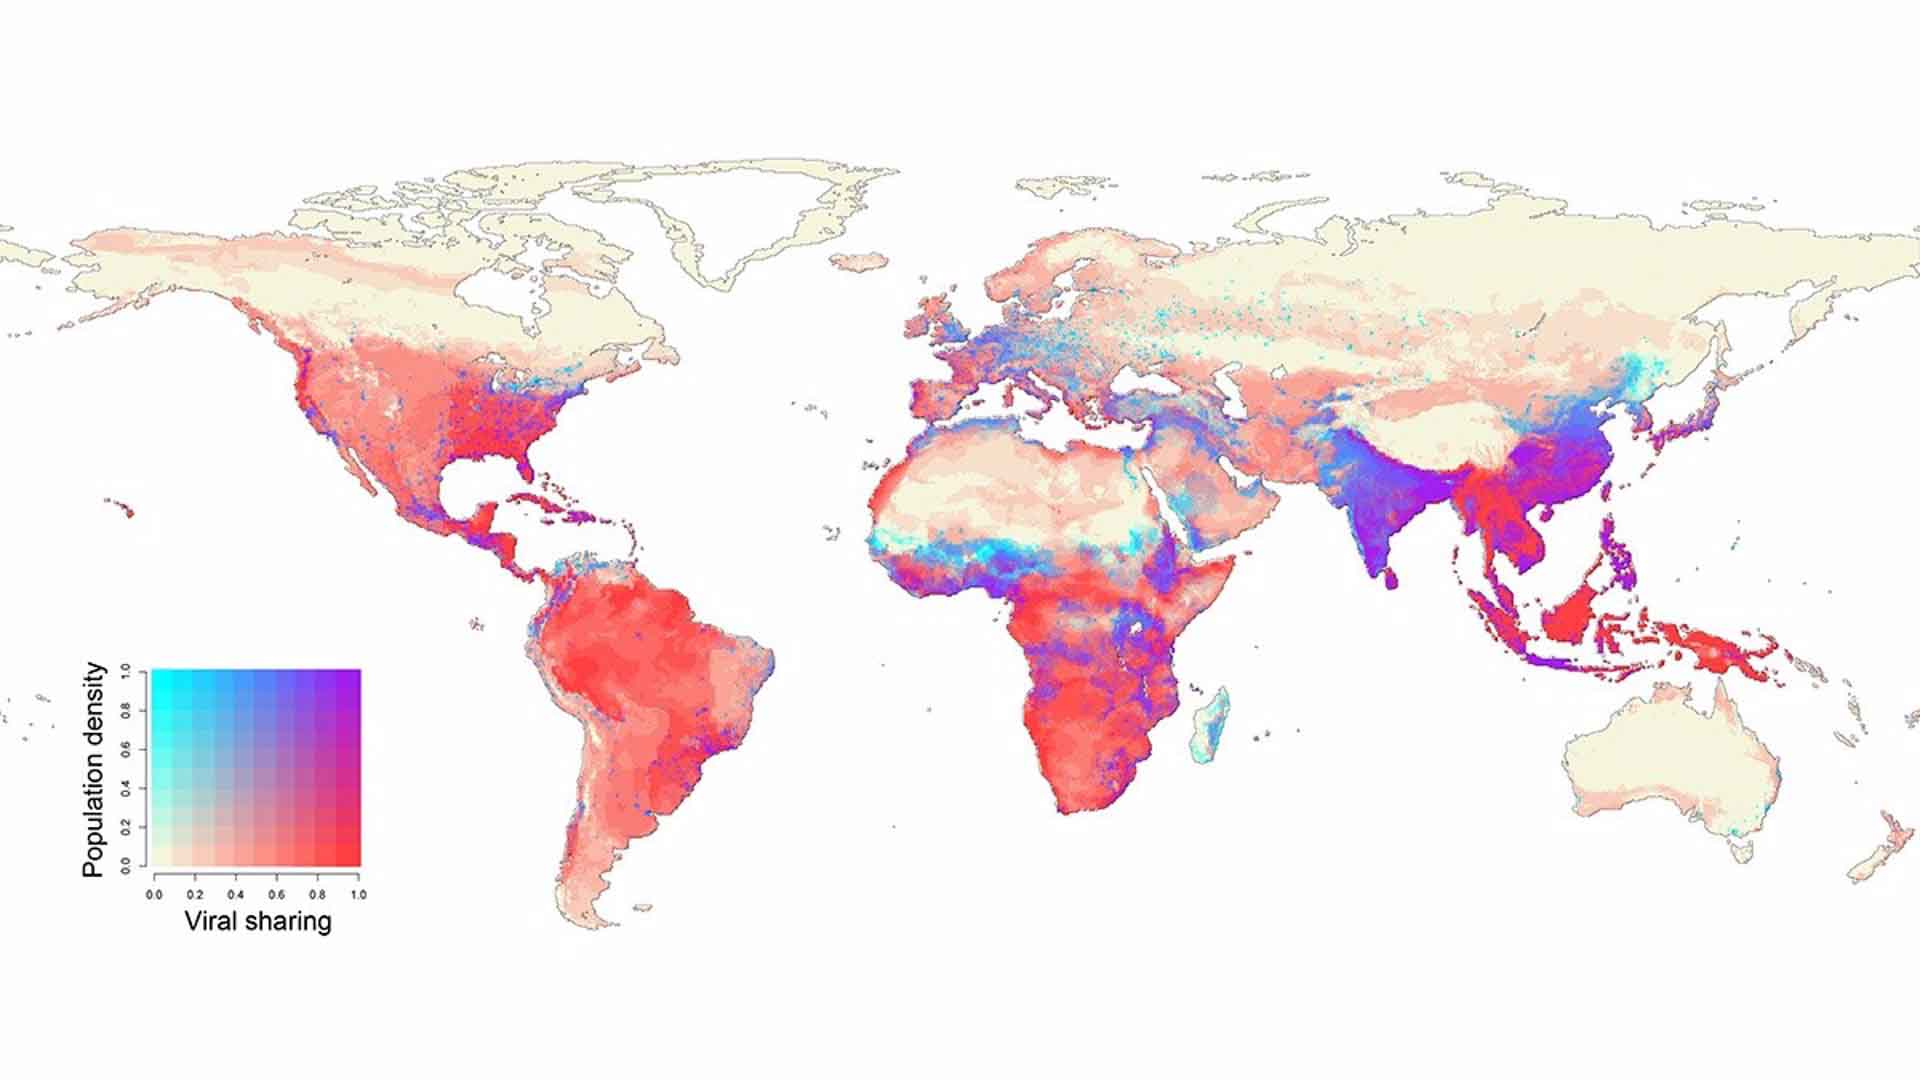 En 2070, los centros de población humana en África ecuatorial, el sur de China, India y el sudeste asiático se superpondrán con los puntos críticos proyectados de transmisión viral entre especies en la vida silvestre / Imagen: EP